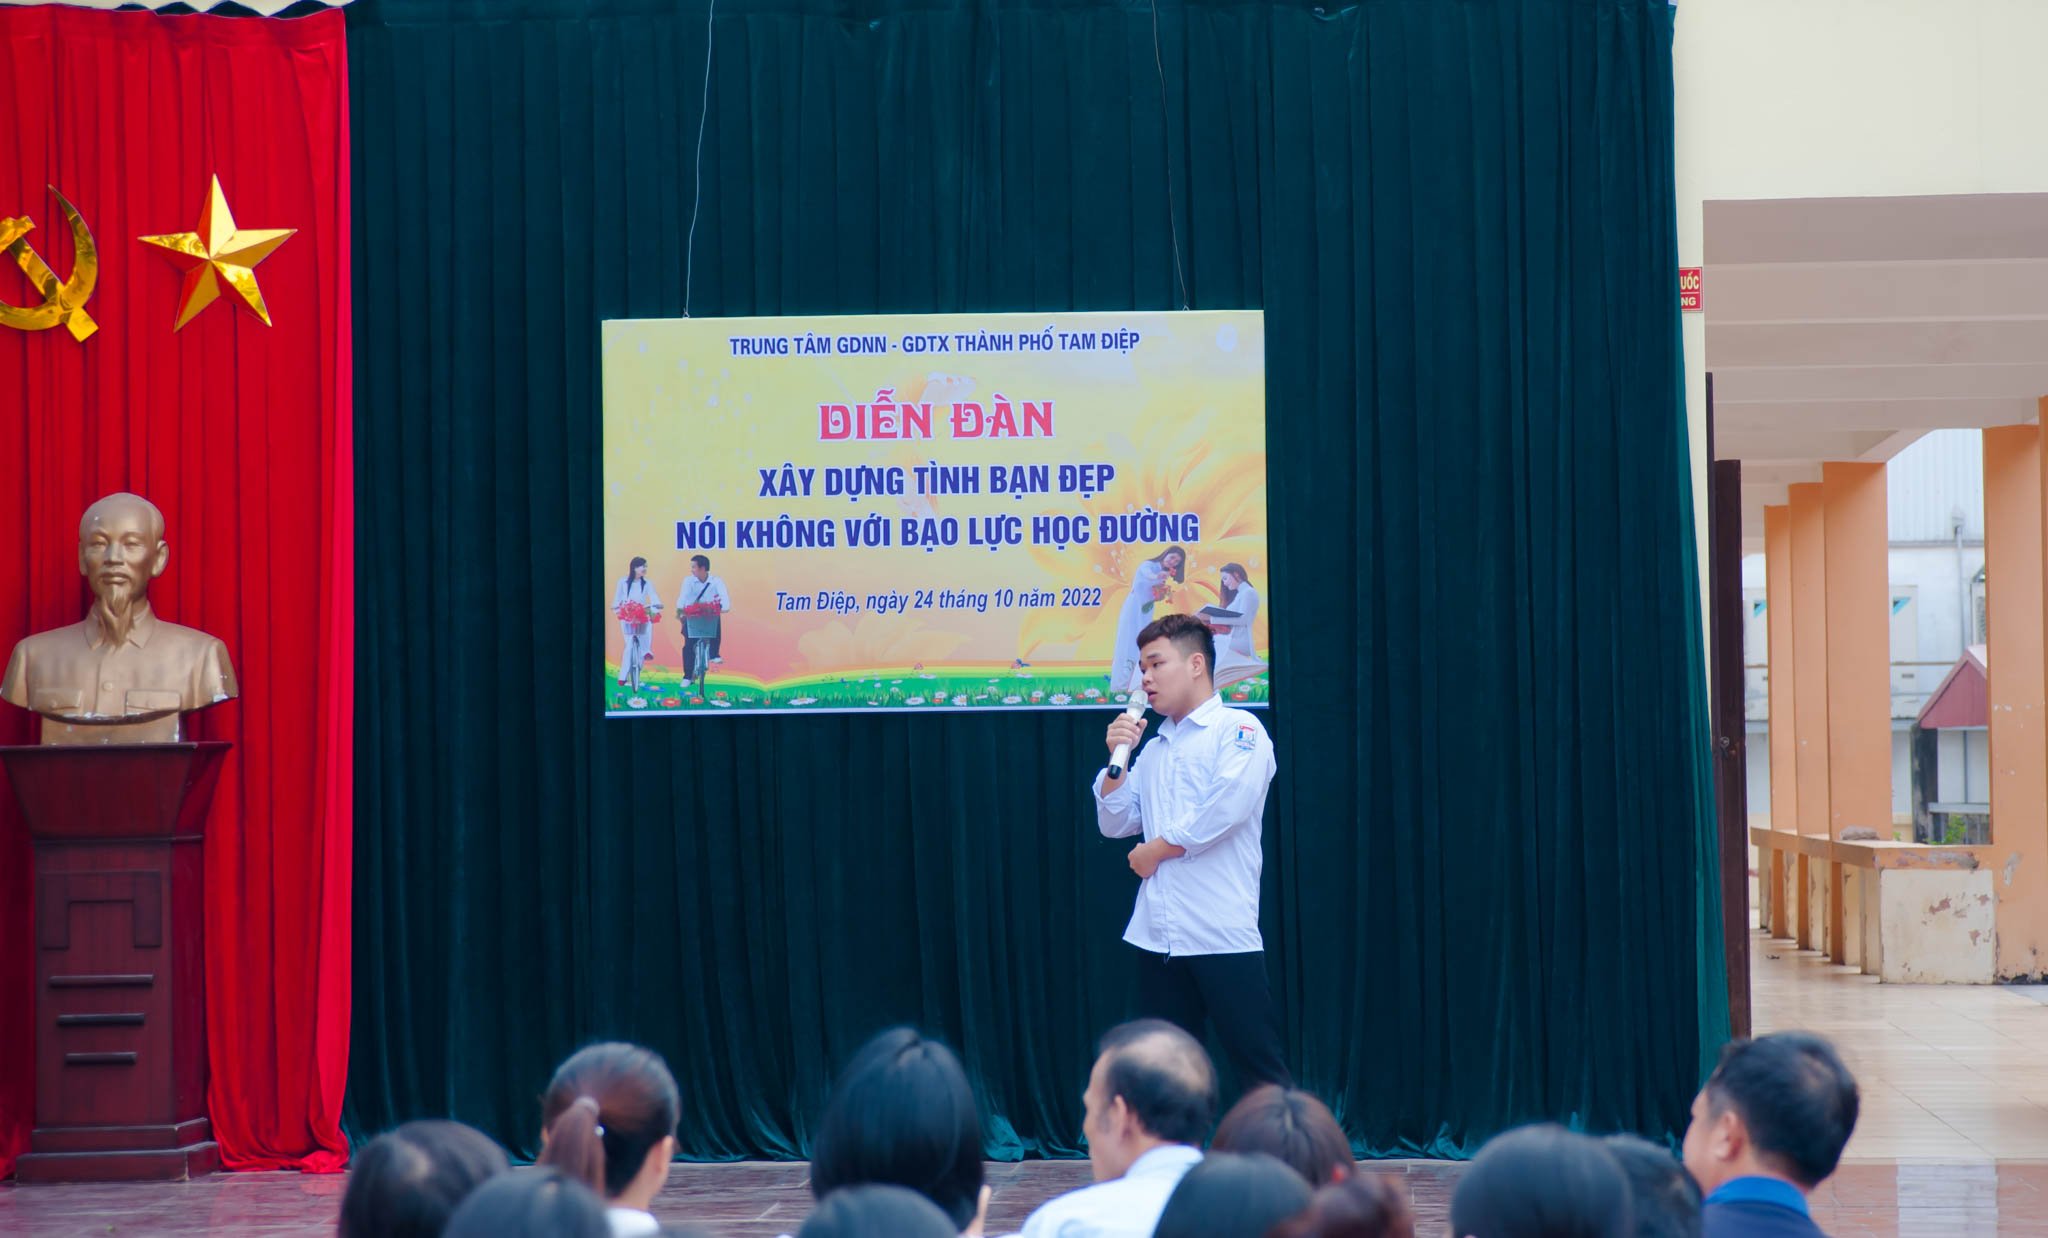 Đoàn trường Trung tâm GDNN-GDTX thành phố Tam Điệp tổ chức Diễn đàn “Xây dựng tình bạn đẹp – Nói không với bạo lực học đường”